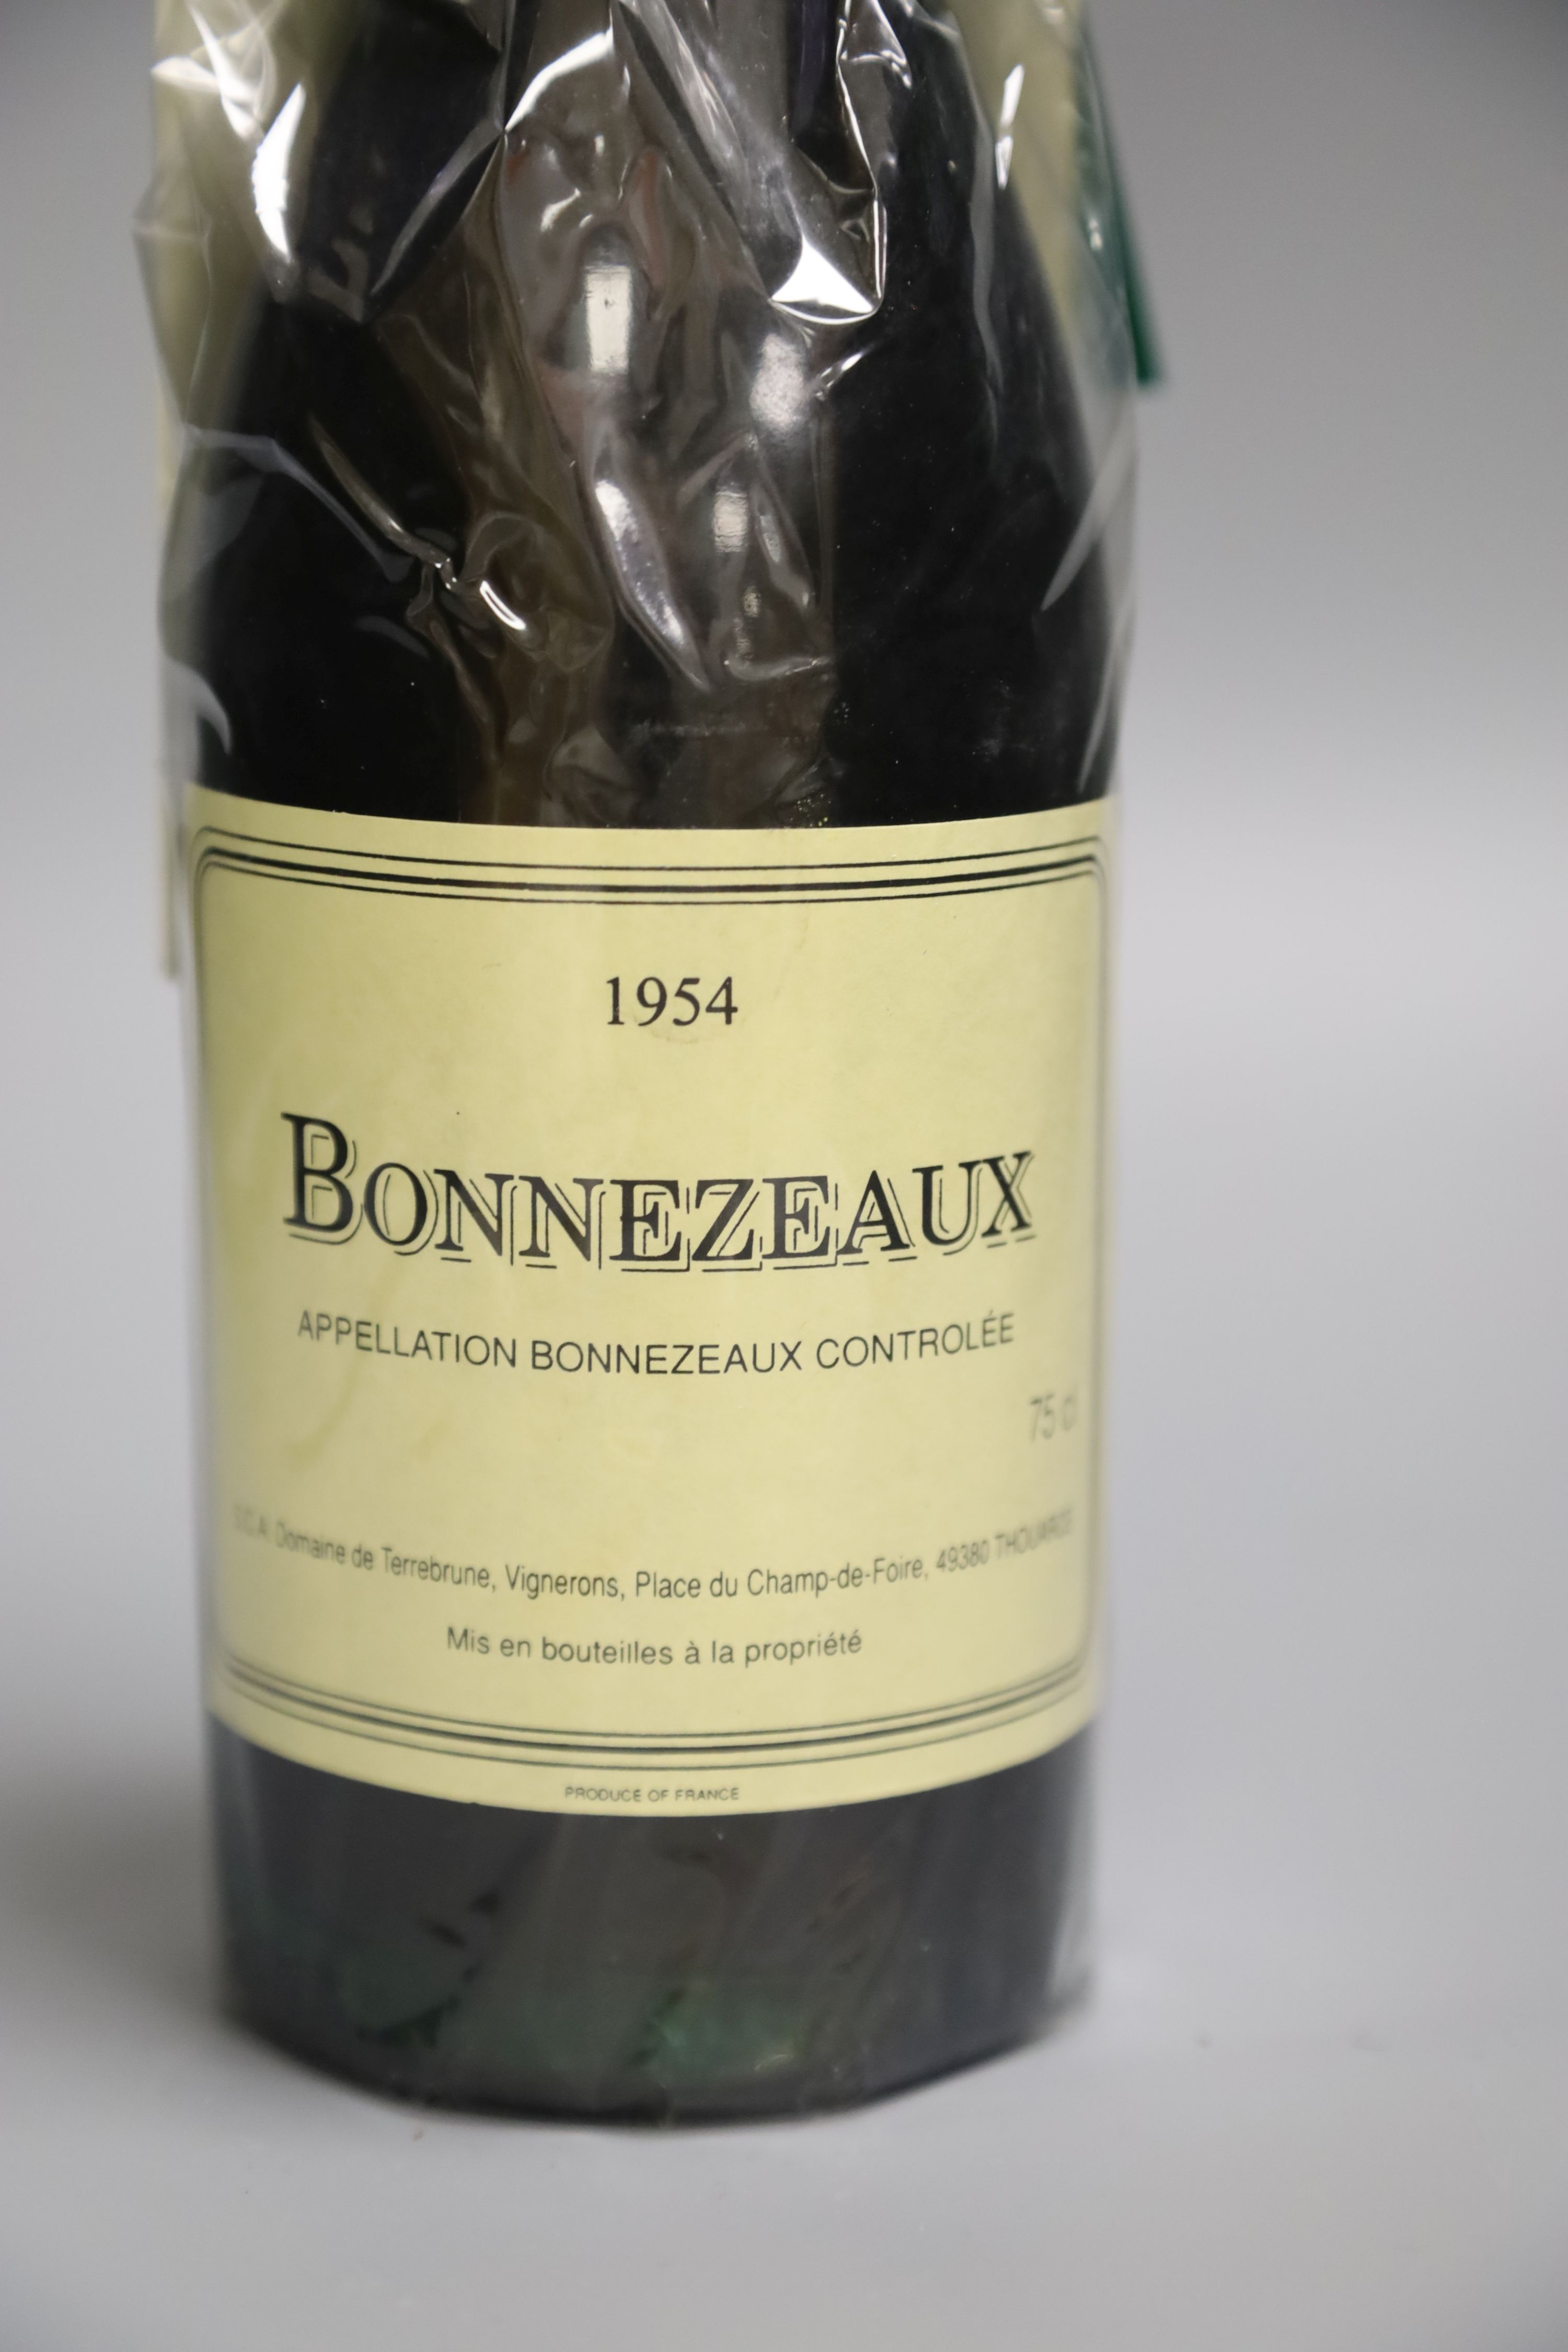 One bottle of Bonnezeaux, 1954.